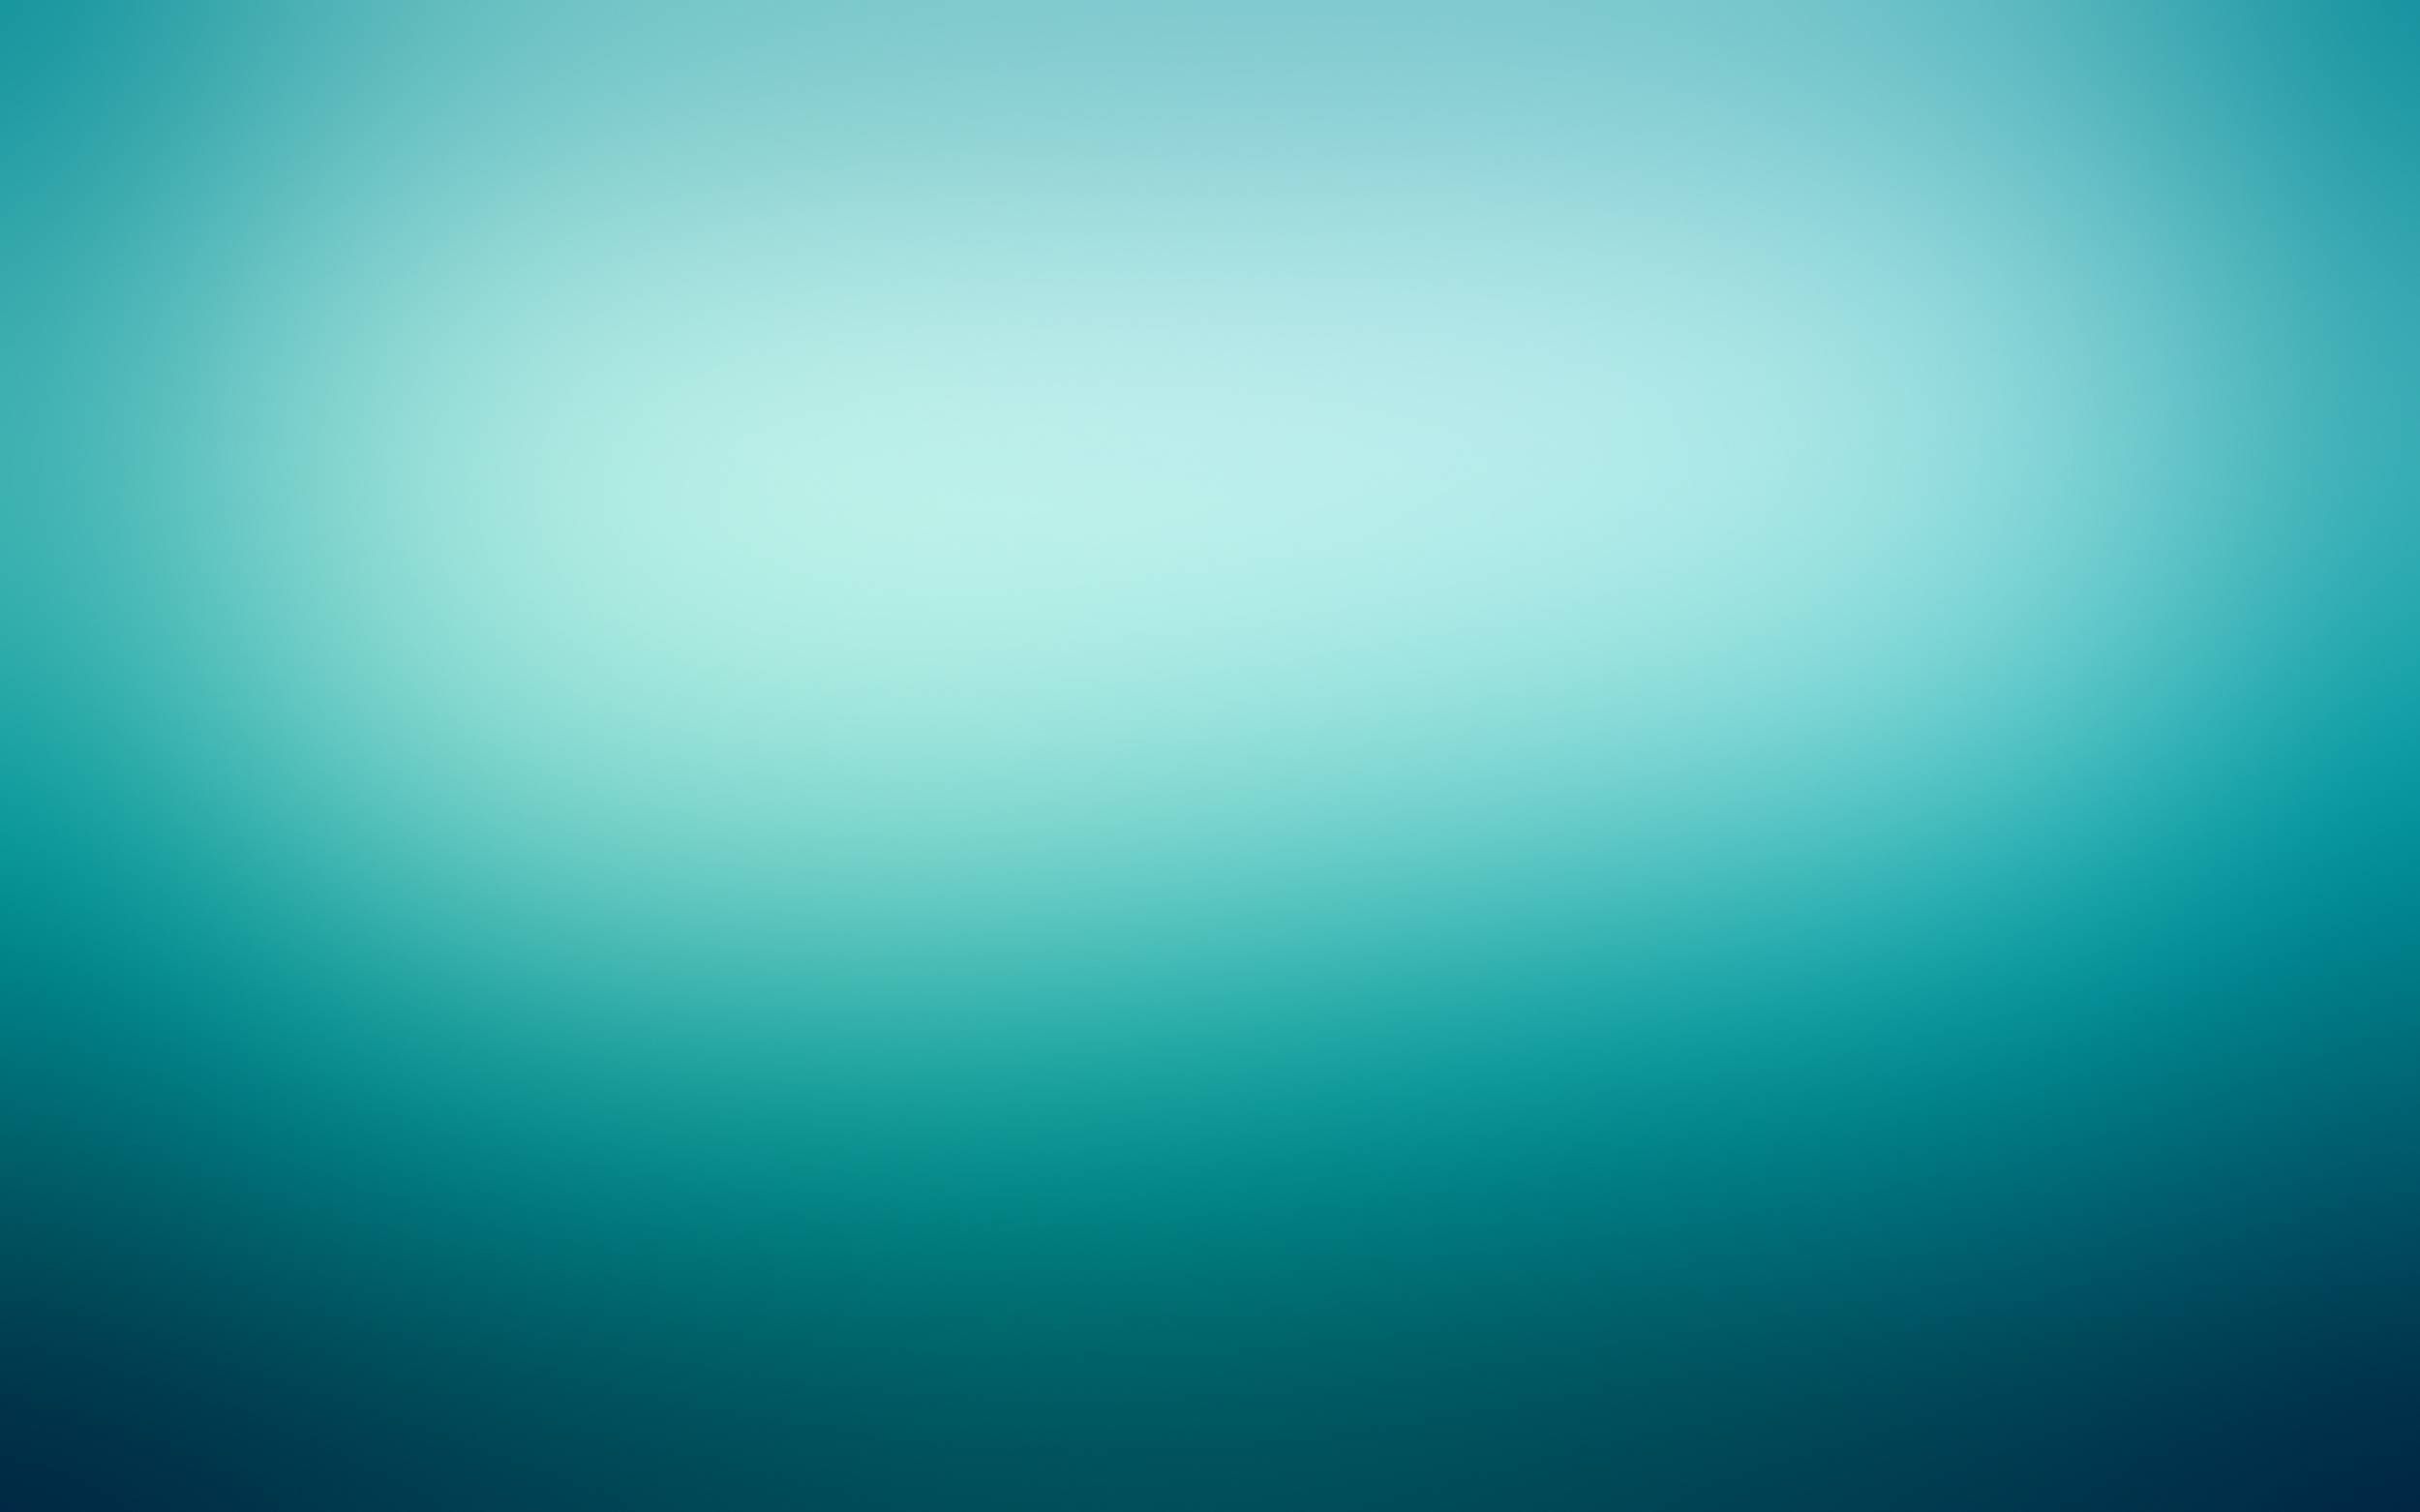 papel pintado turquesa y blanco,azul,agua,verde,turquesa,tiempo de día